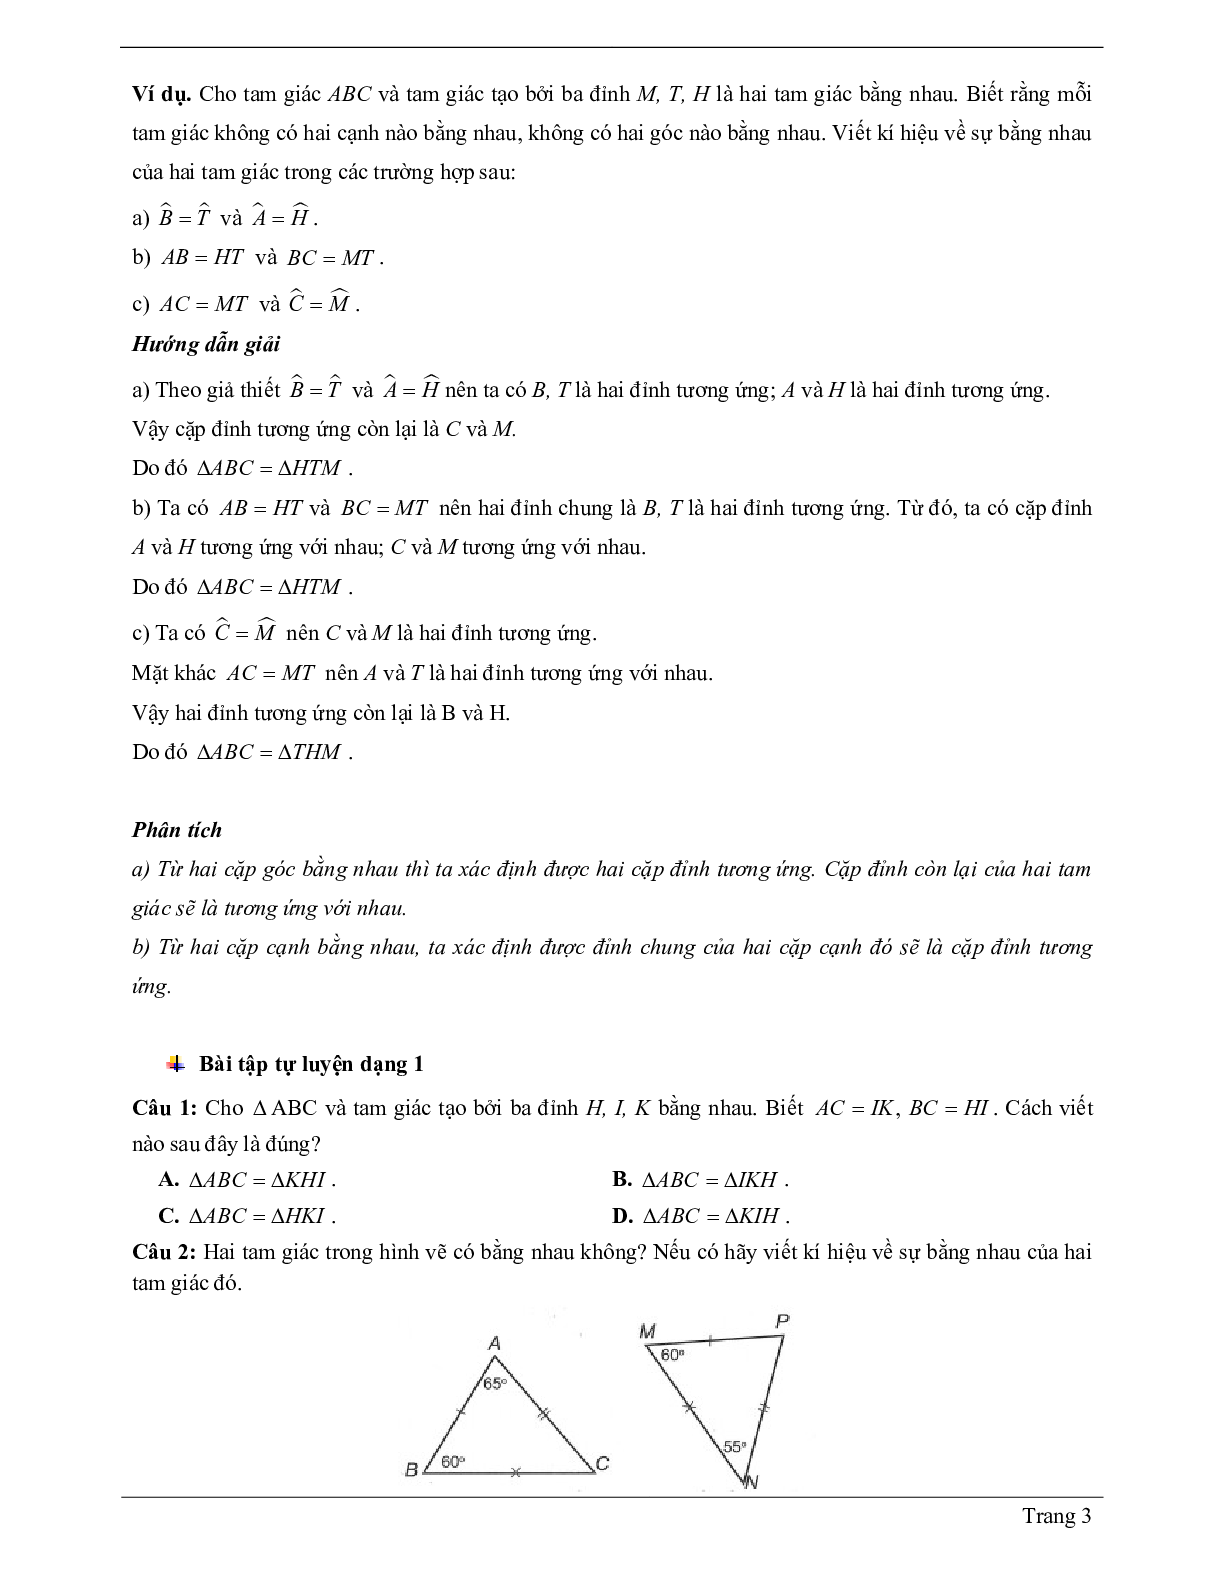 Lý thuyết Toán 7 có đáp án: Hai tam giác bằng nhau (trang 3)